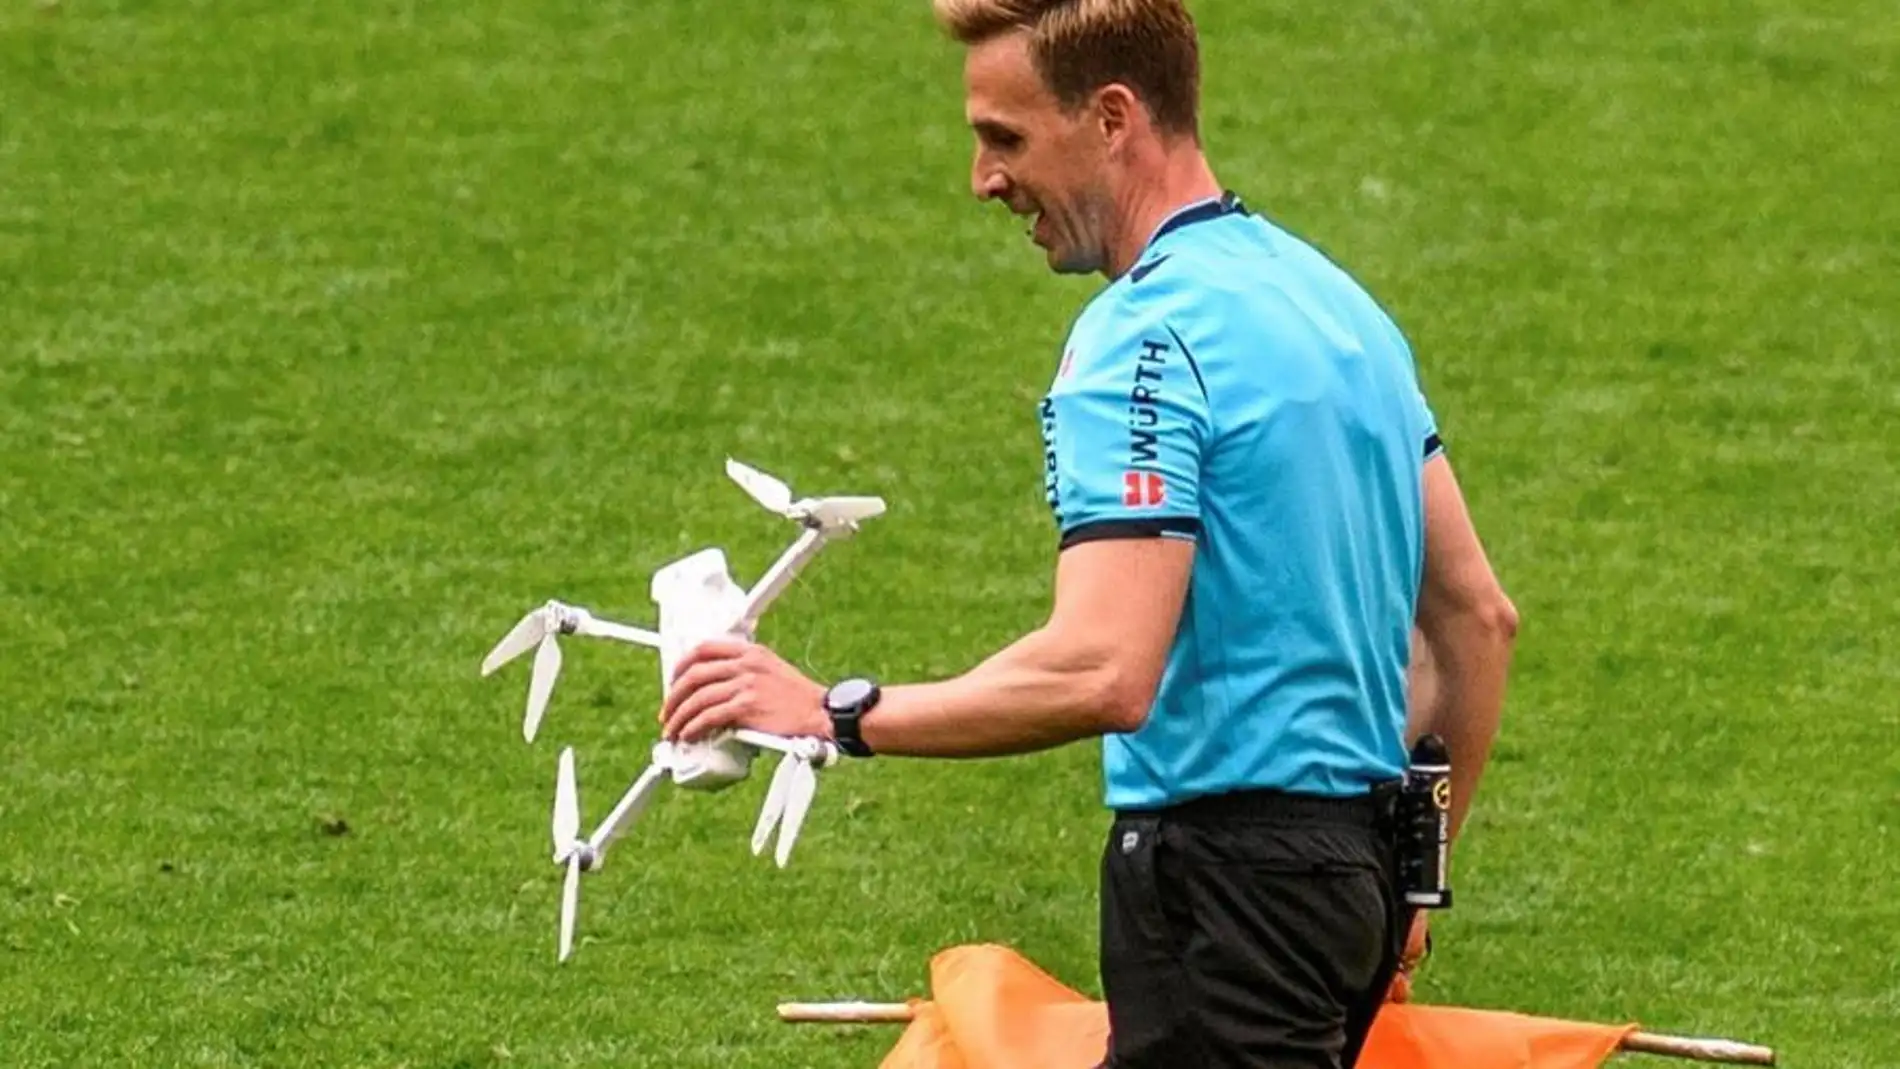 El colegiado Pizarro Gómez recogiendo un dron caído en el partido Athletic-Eibar